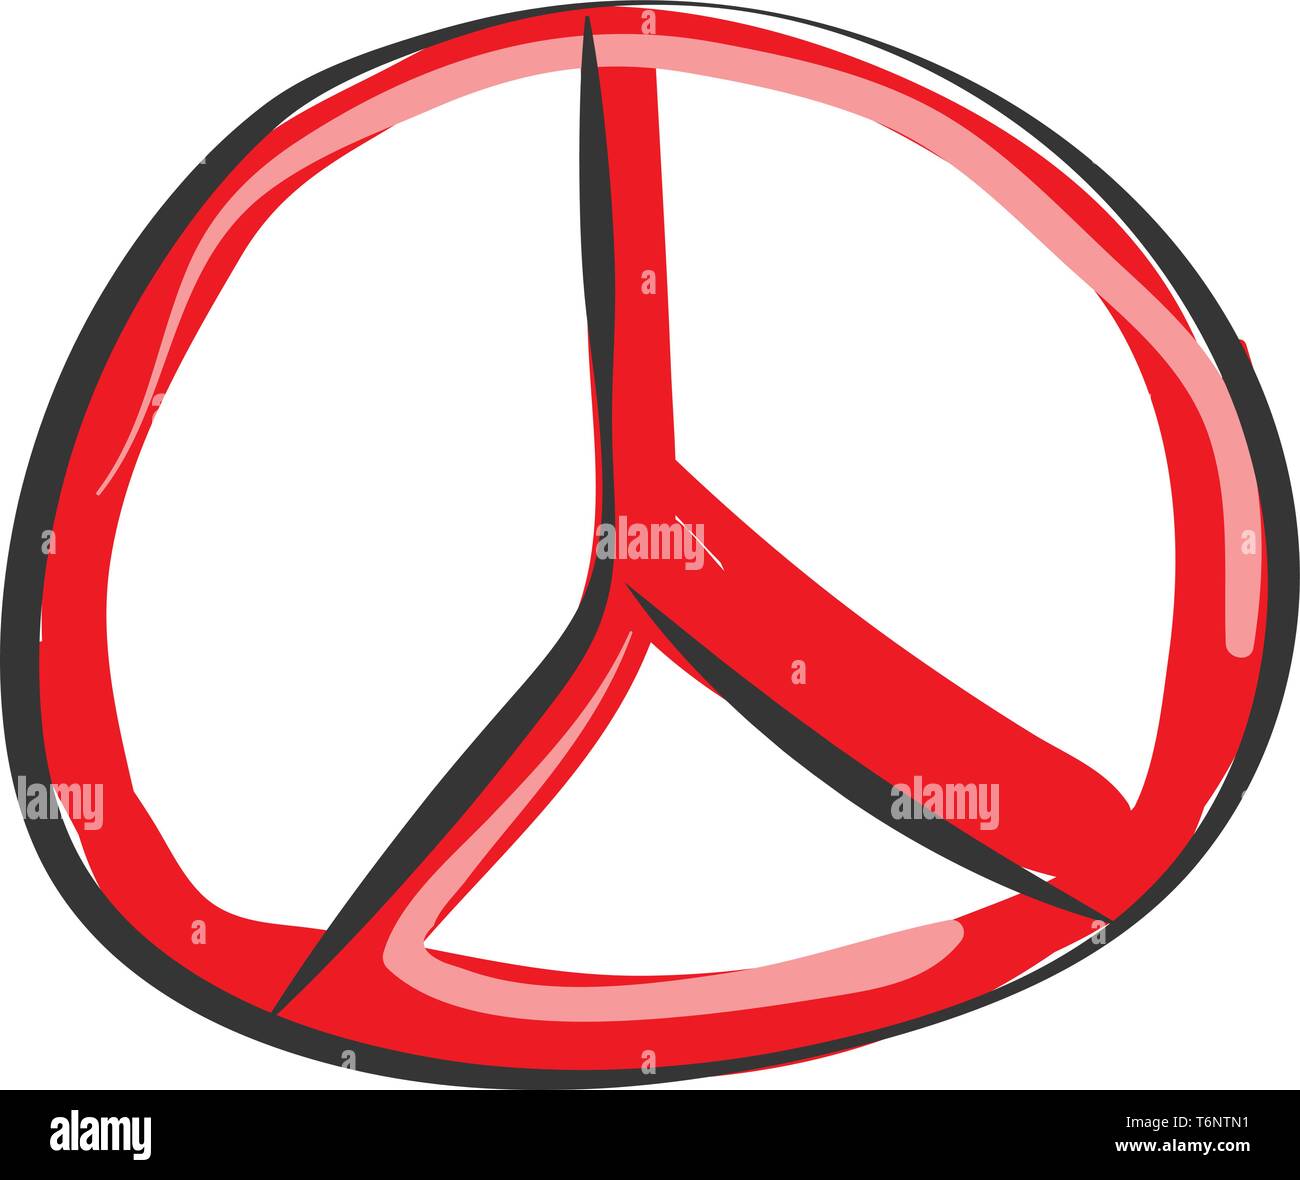 La pittura di Mercedes-Benz emblema con la triplice stella e l'anello circostante in colore rosso del vettore di disegno a colori o illustrazione Illustrazione Vettoriale